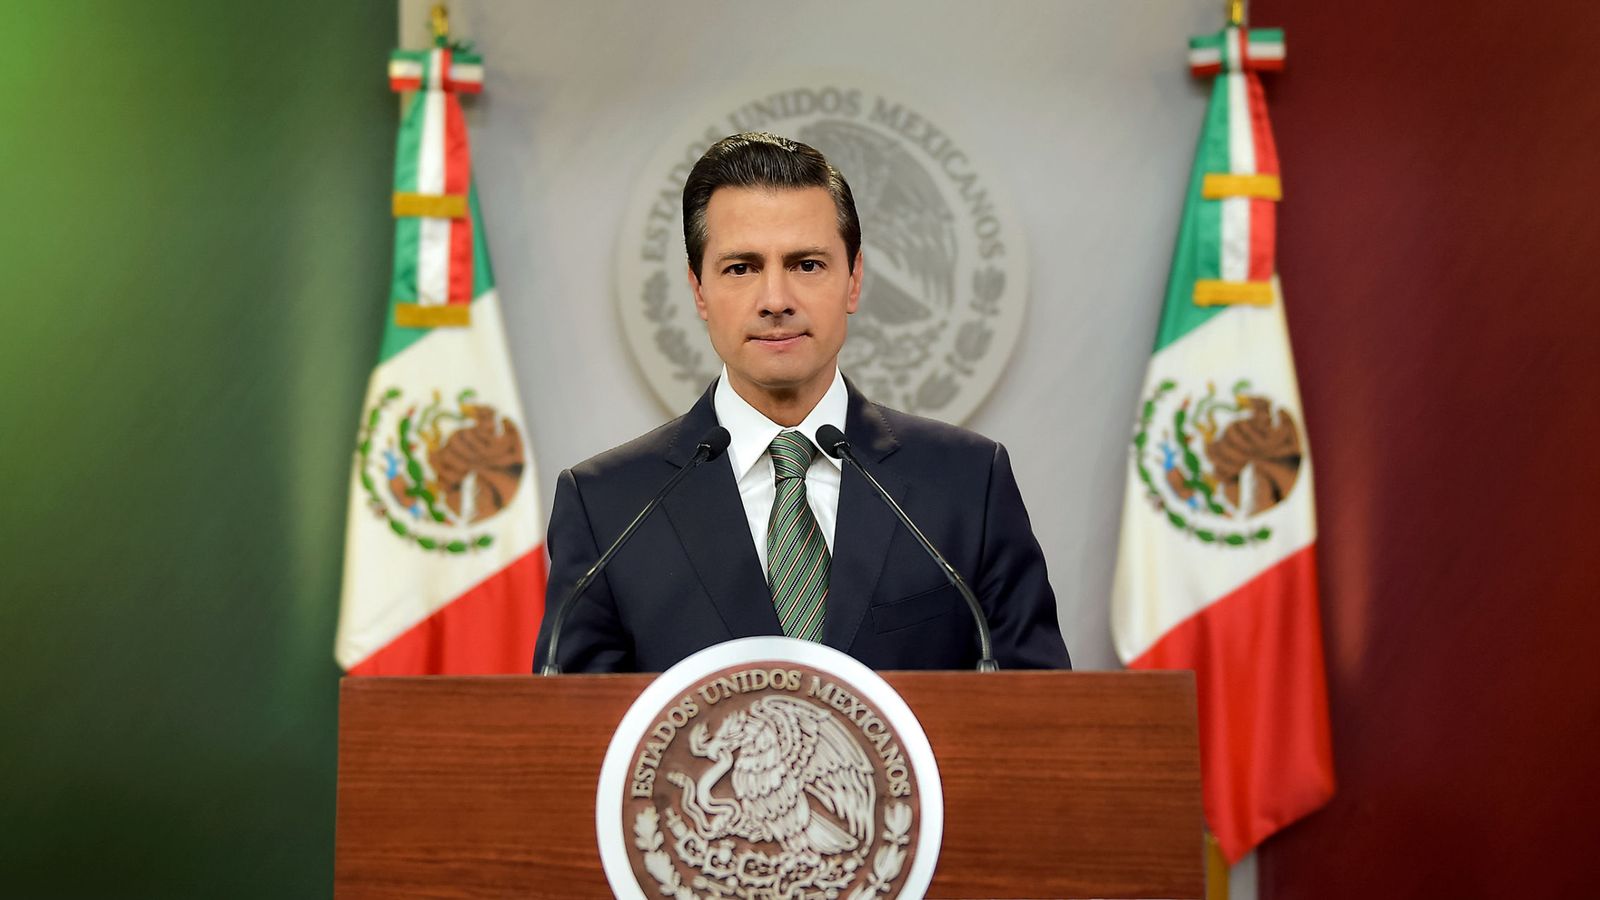 Foto: Enrique Peña Nieto, en una fotografía difundida por la Presidencia de México, el 20 de enero de 2017. (EFE)